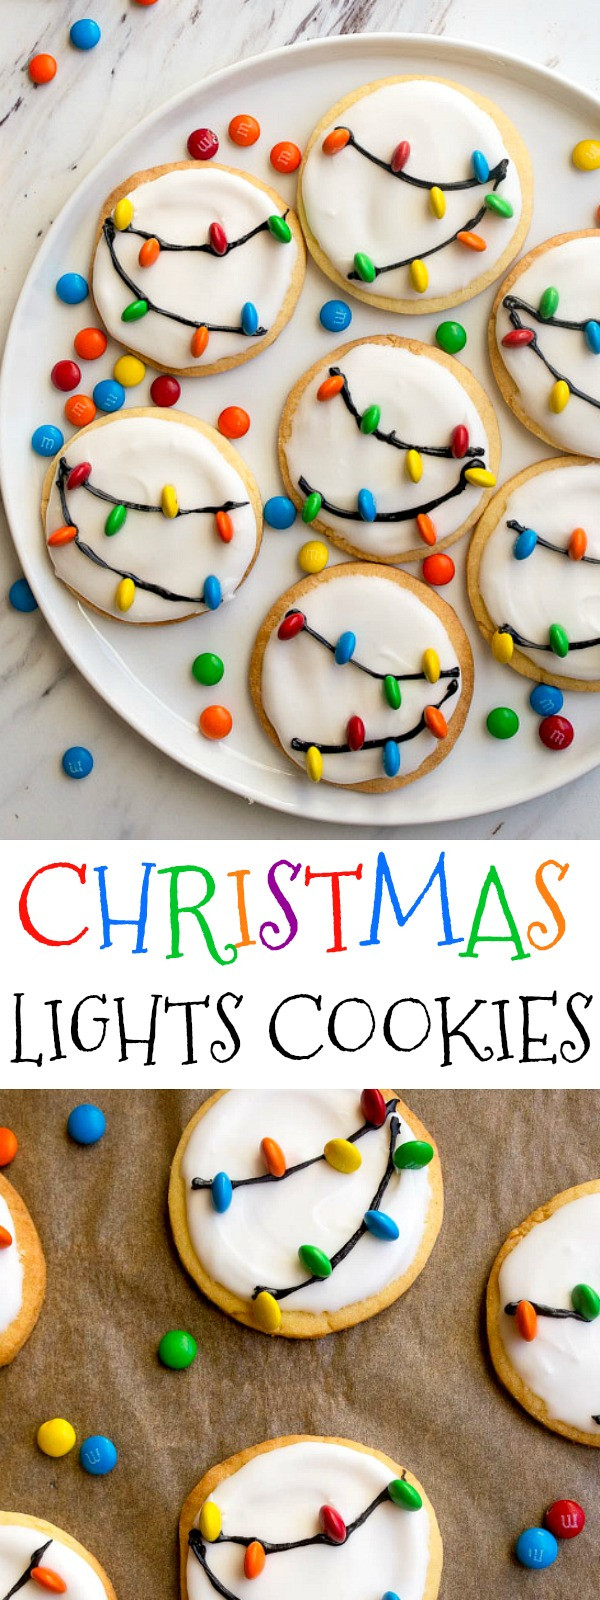 Christmas Light Cookies
 Christmas Lights Cookies with Royal Icing